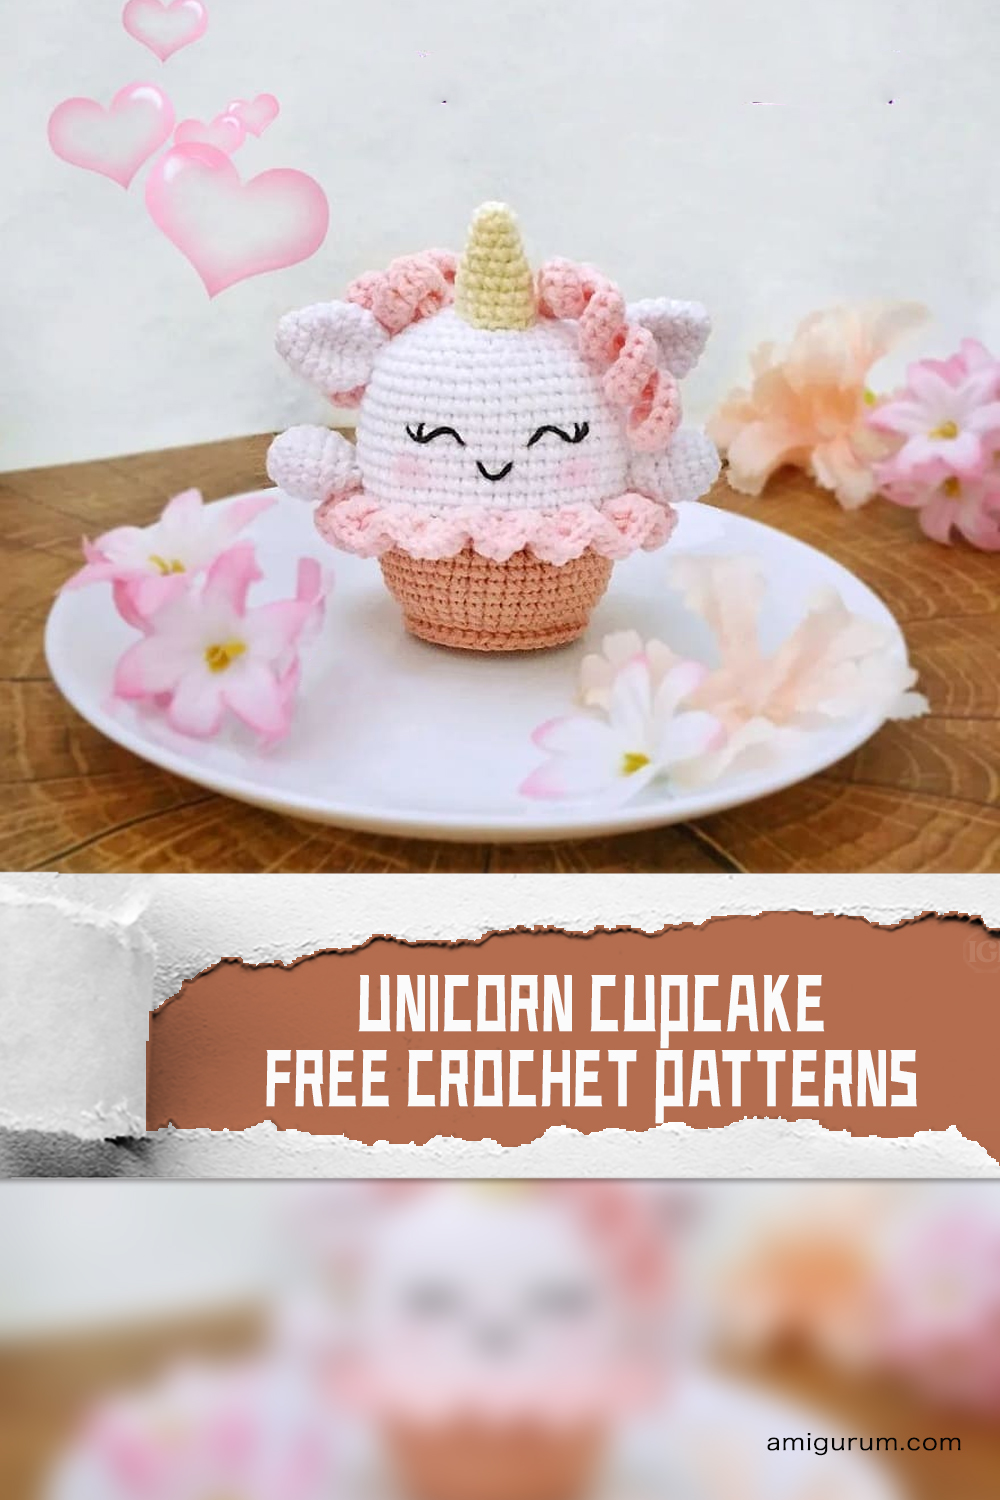 FREE Unicorn Cupcake Crochet Patterns 